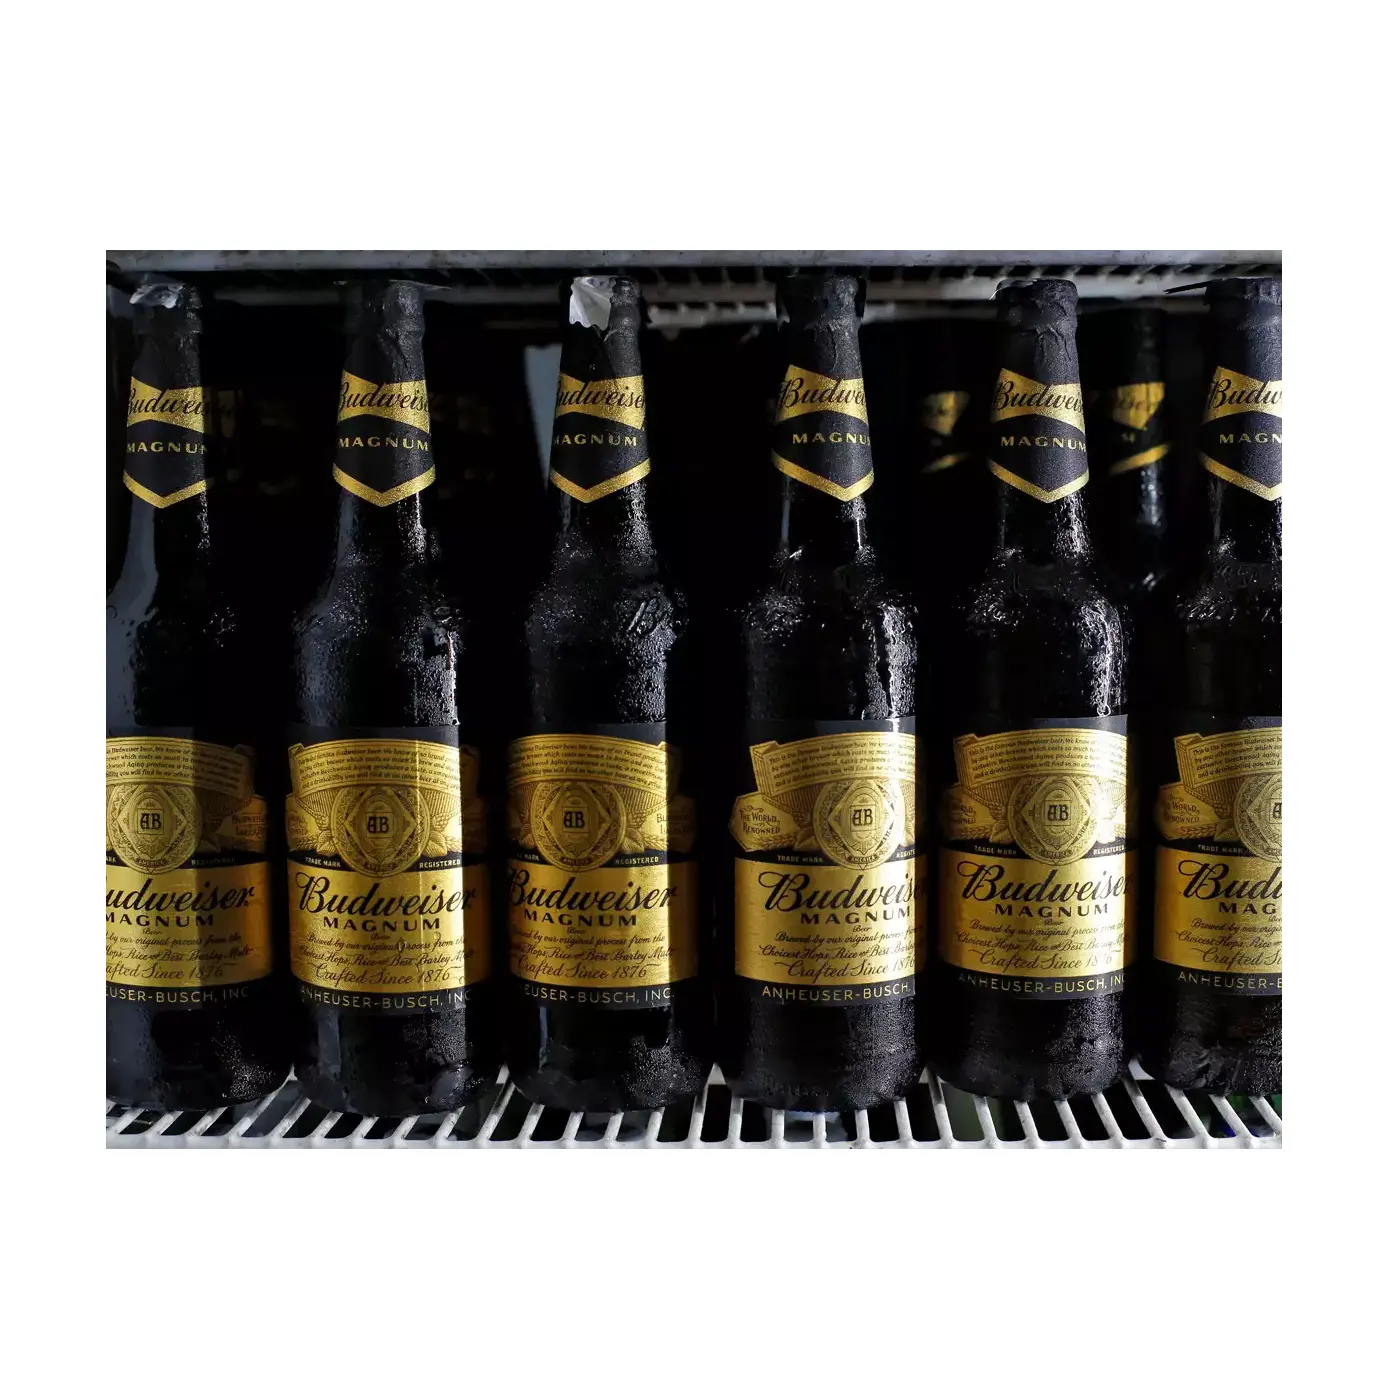 Prezzo superiore all'esportazione Bud weiser 0.0 confezione di birra analcolica da 6 6X330m alcolica Bud weisers bottiglia di birra 330ml